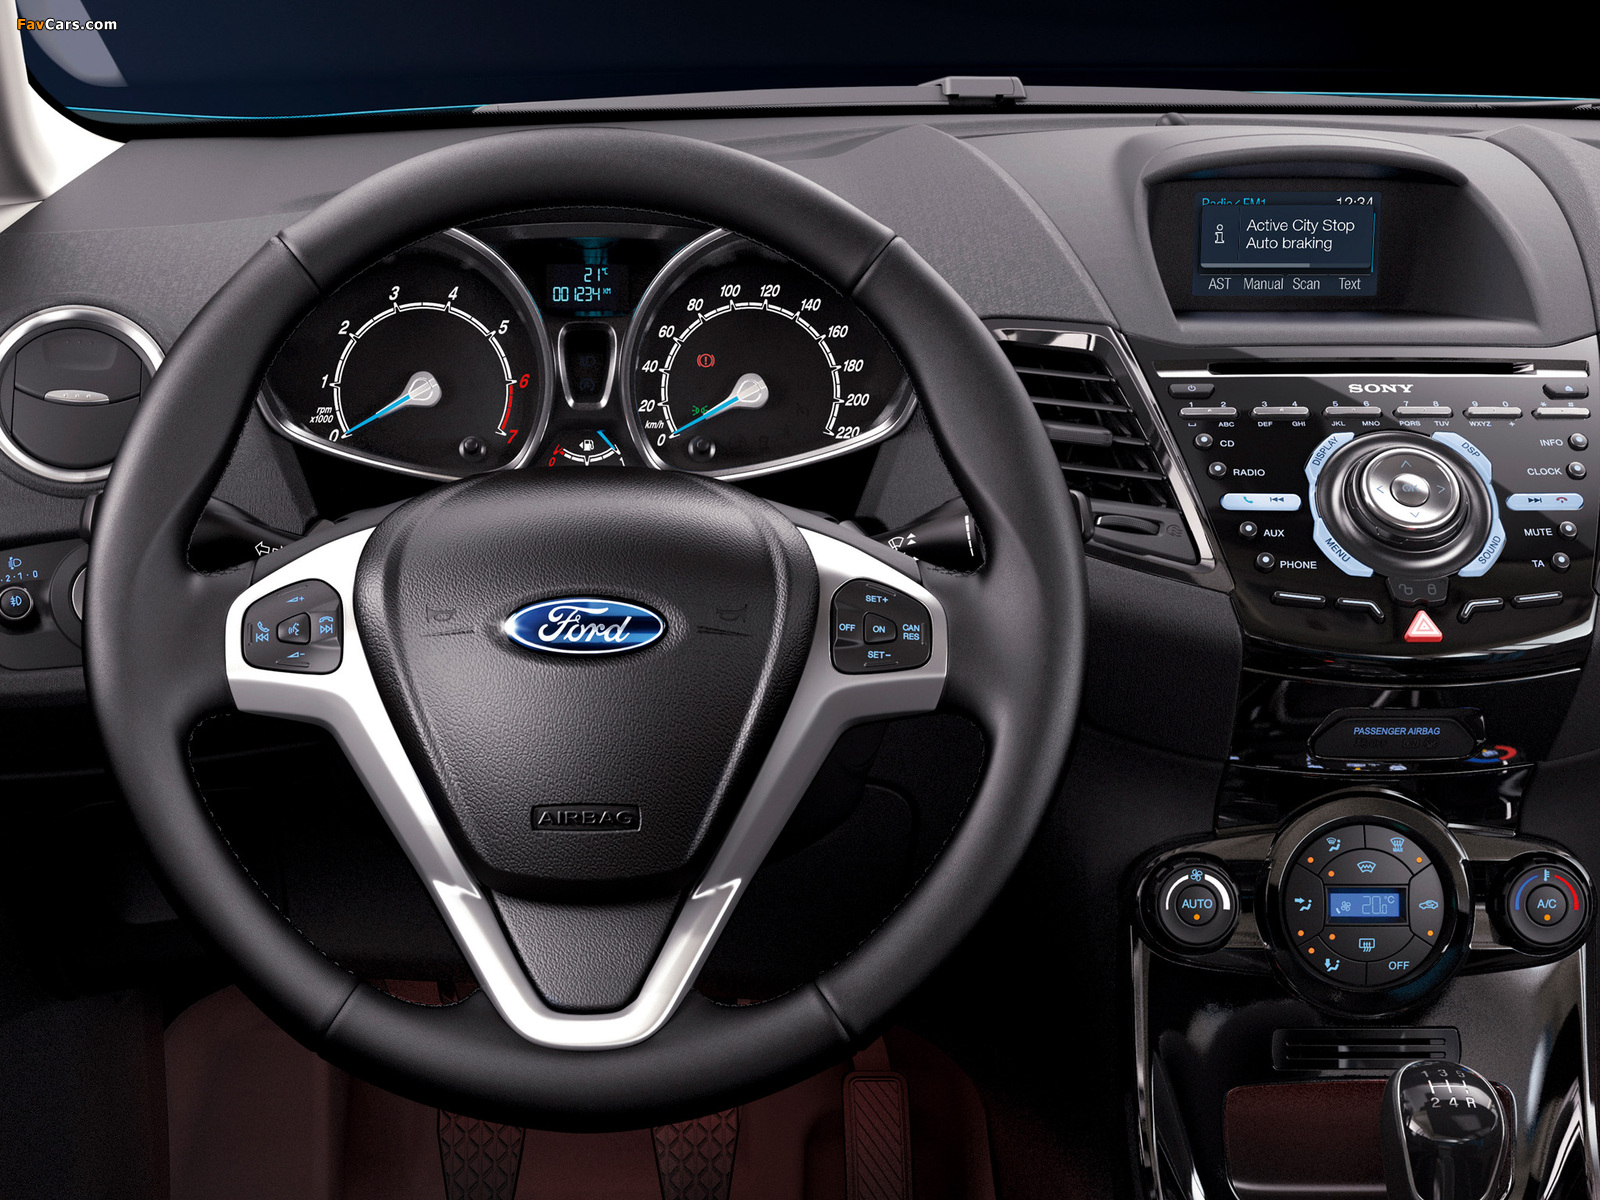 Ford Fiesta 5-door 2012 pictures (1600 x 1200)